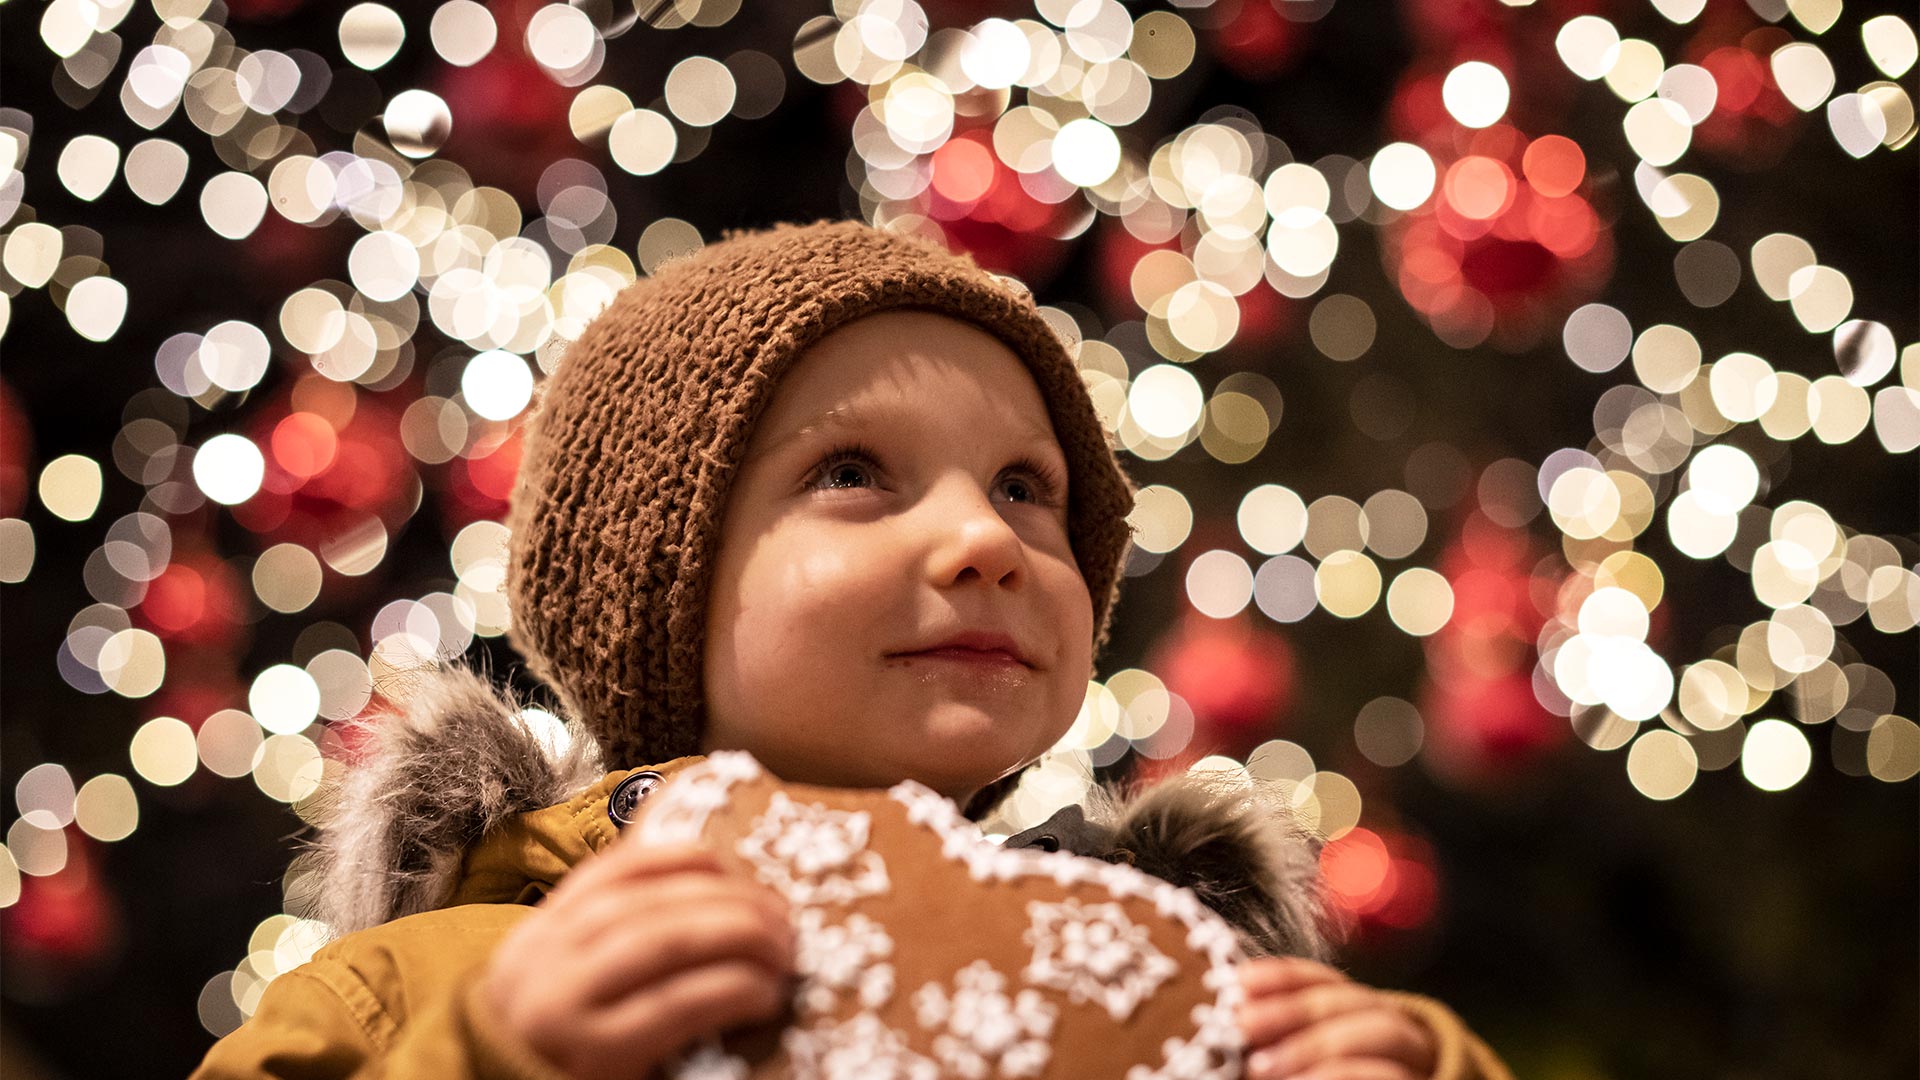 Su uno sfondo di luci, in primo piano un bambino mangia un dolcetto in un atmosfera natalizia.